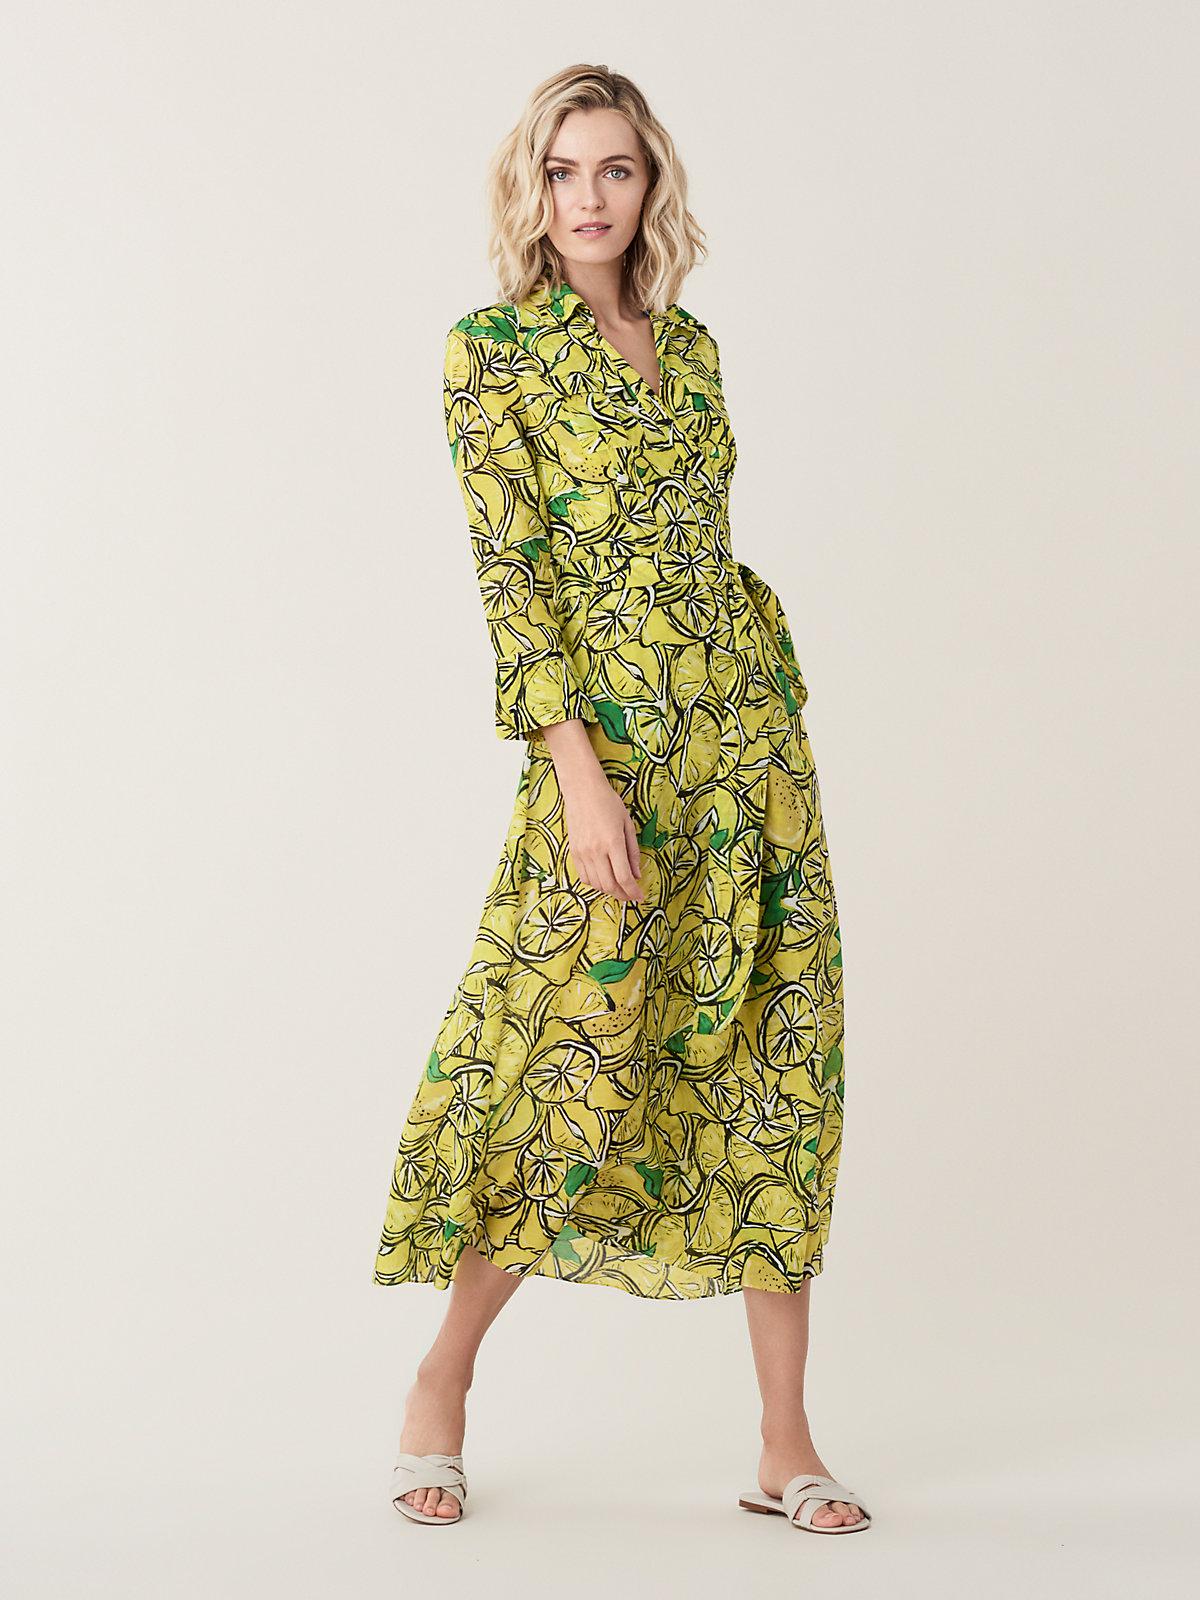 Diane von Furstenberg Lemon Print Cotton Blend Wrap Dress in Green - Lyst